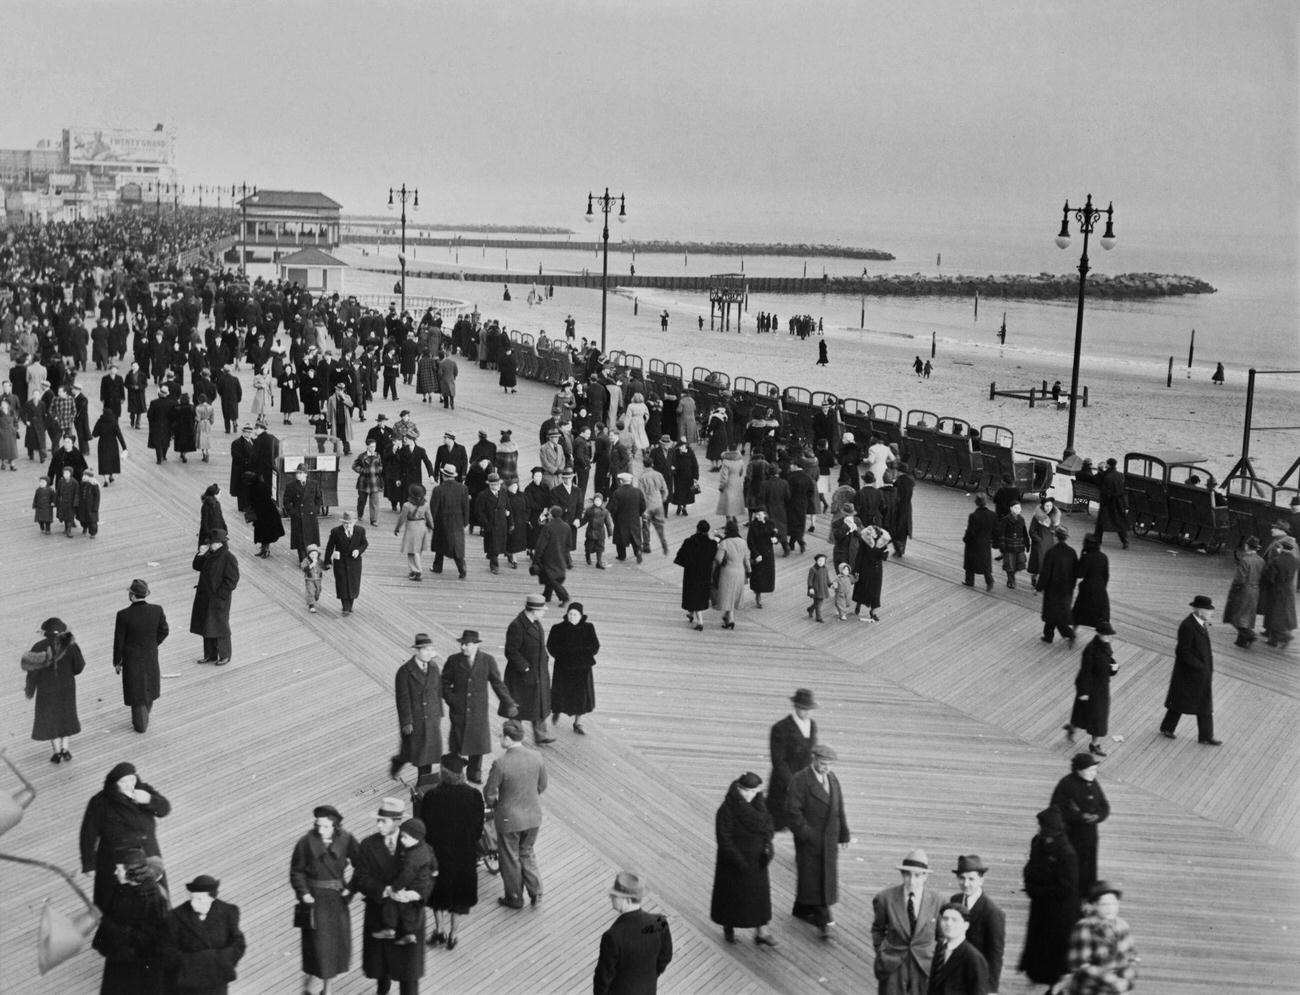 Busy Boardwalk At Coney Island, February 7, 1938